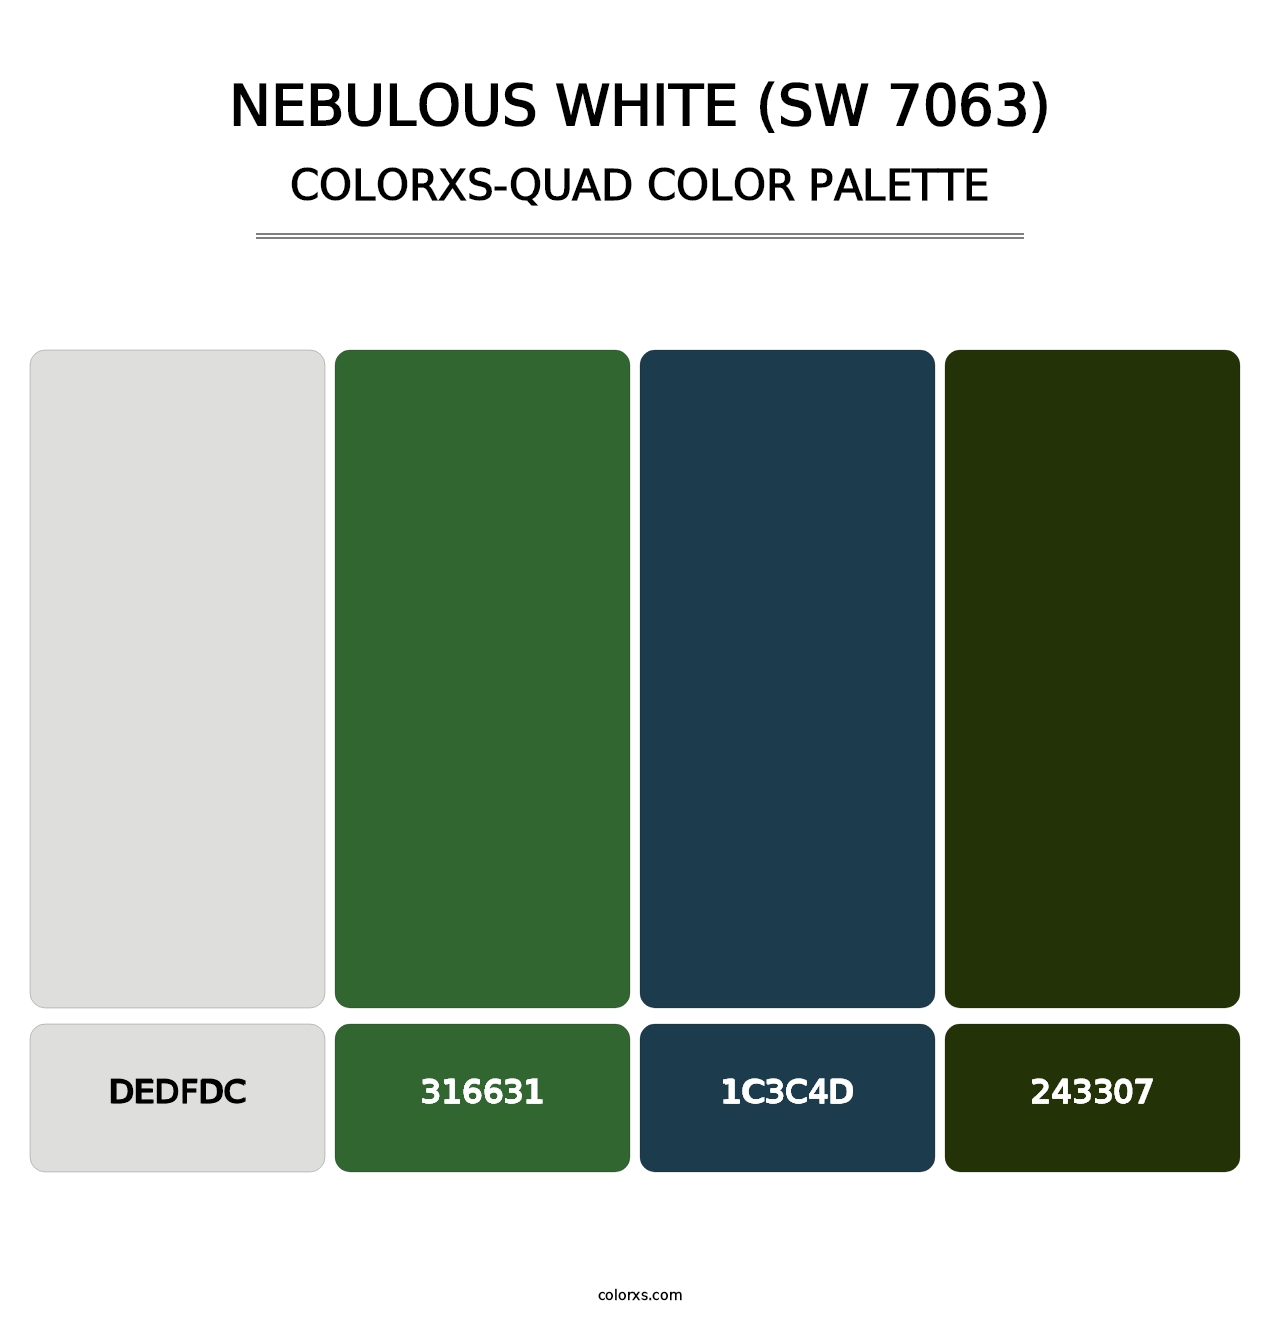 Nebulous White (SW 7063) - Colorxs Quad Palette